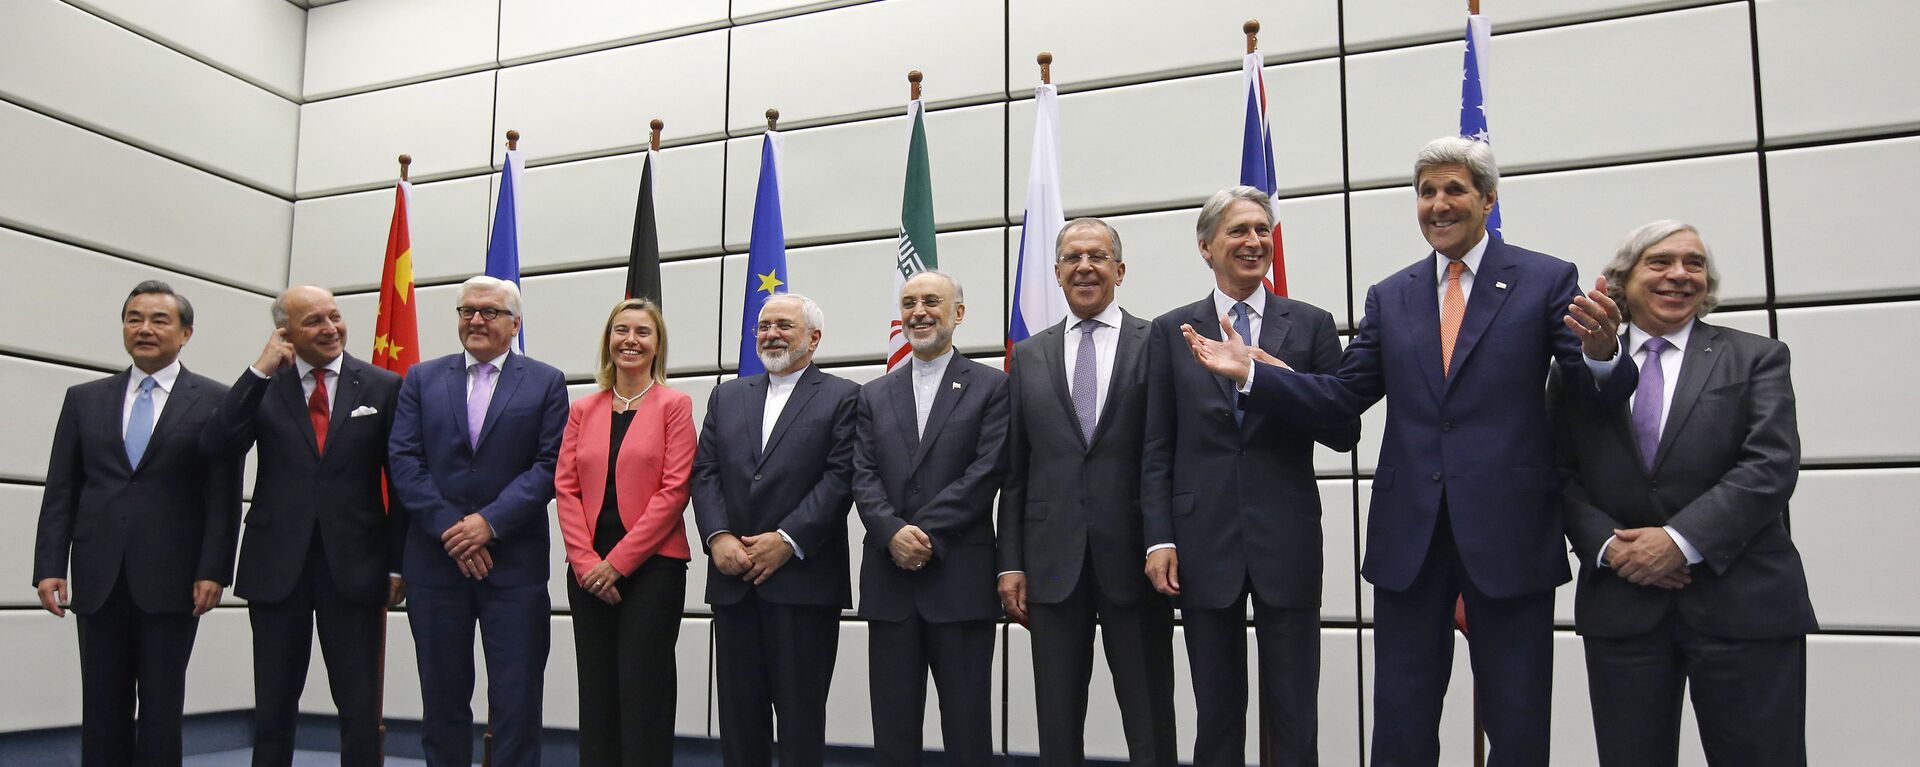 El Plan Integral de Acción Conjunta fue firmado en Viena el 14 de julio de 2015 entre Irán y el Grupo 5+1, compuesto por los cinco miembros permanentes del Consejo de Seguridad de la ONU—China, Francia, Rusia, Reino Unido, Estados Unidos— más Alemania. - Sputnik Mundo, 1920, 28.11.2021